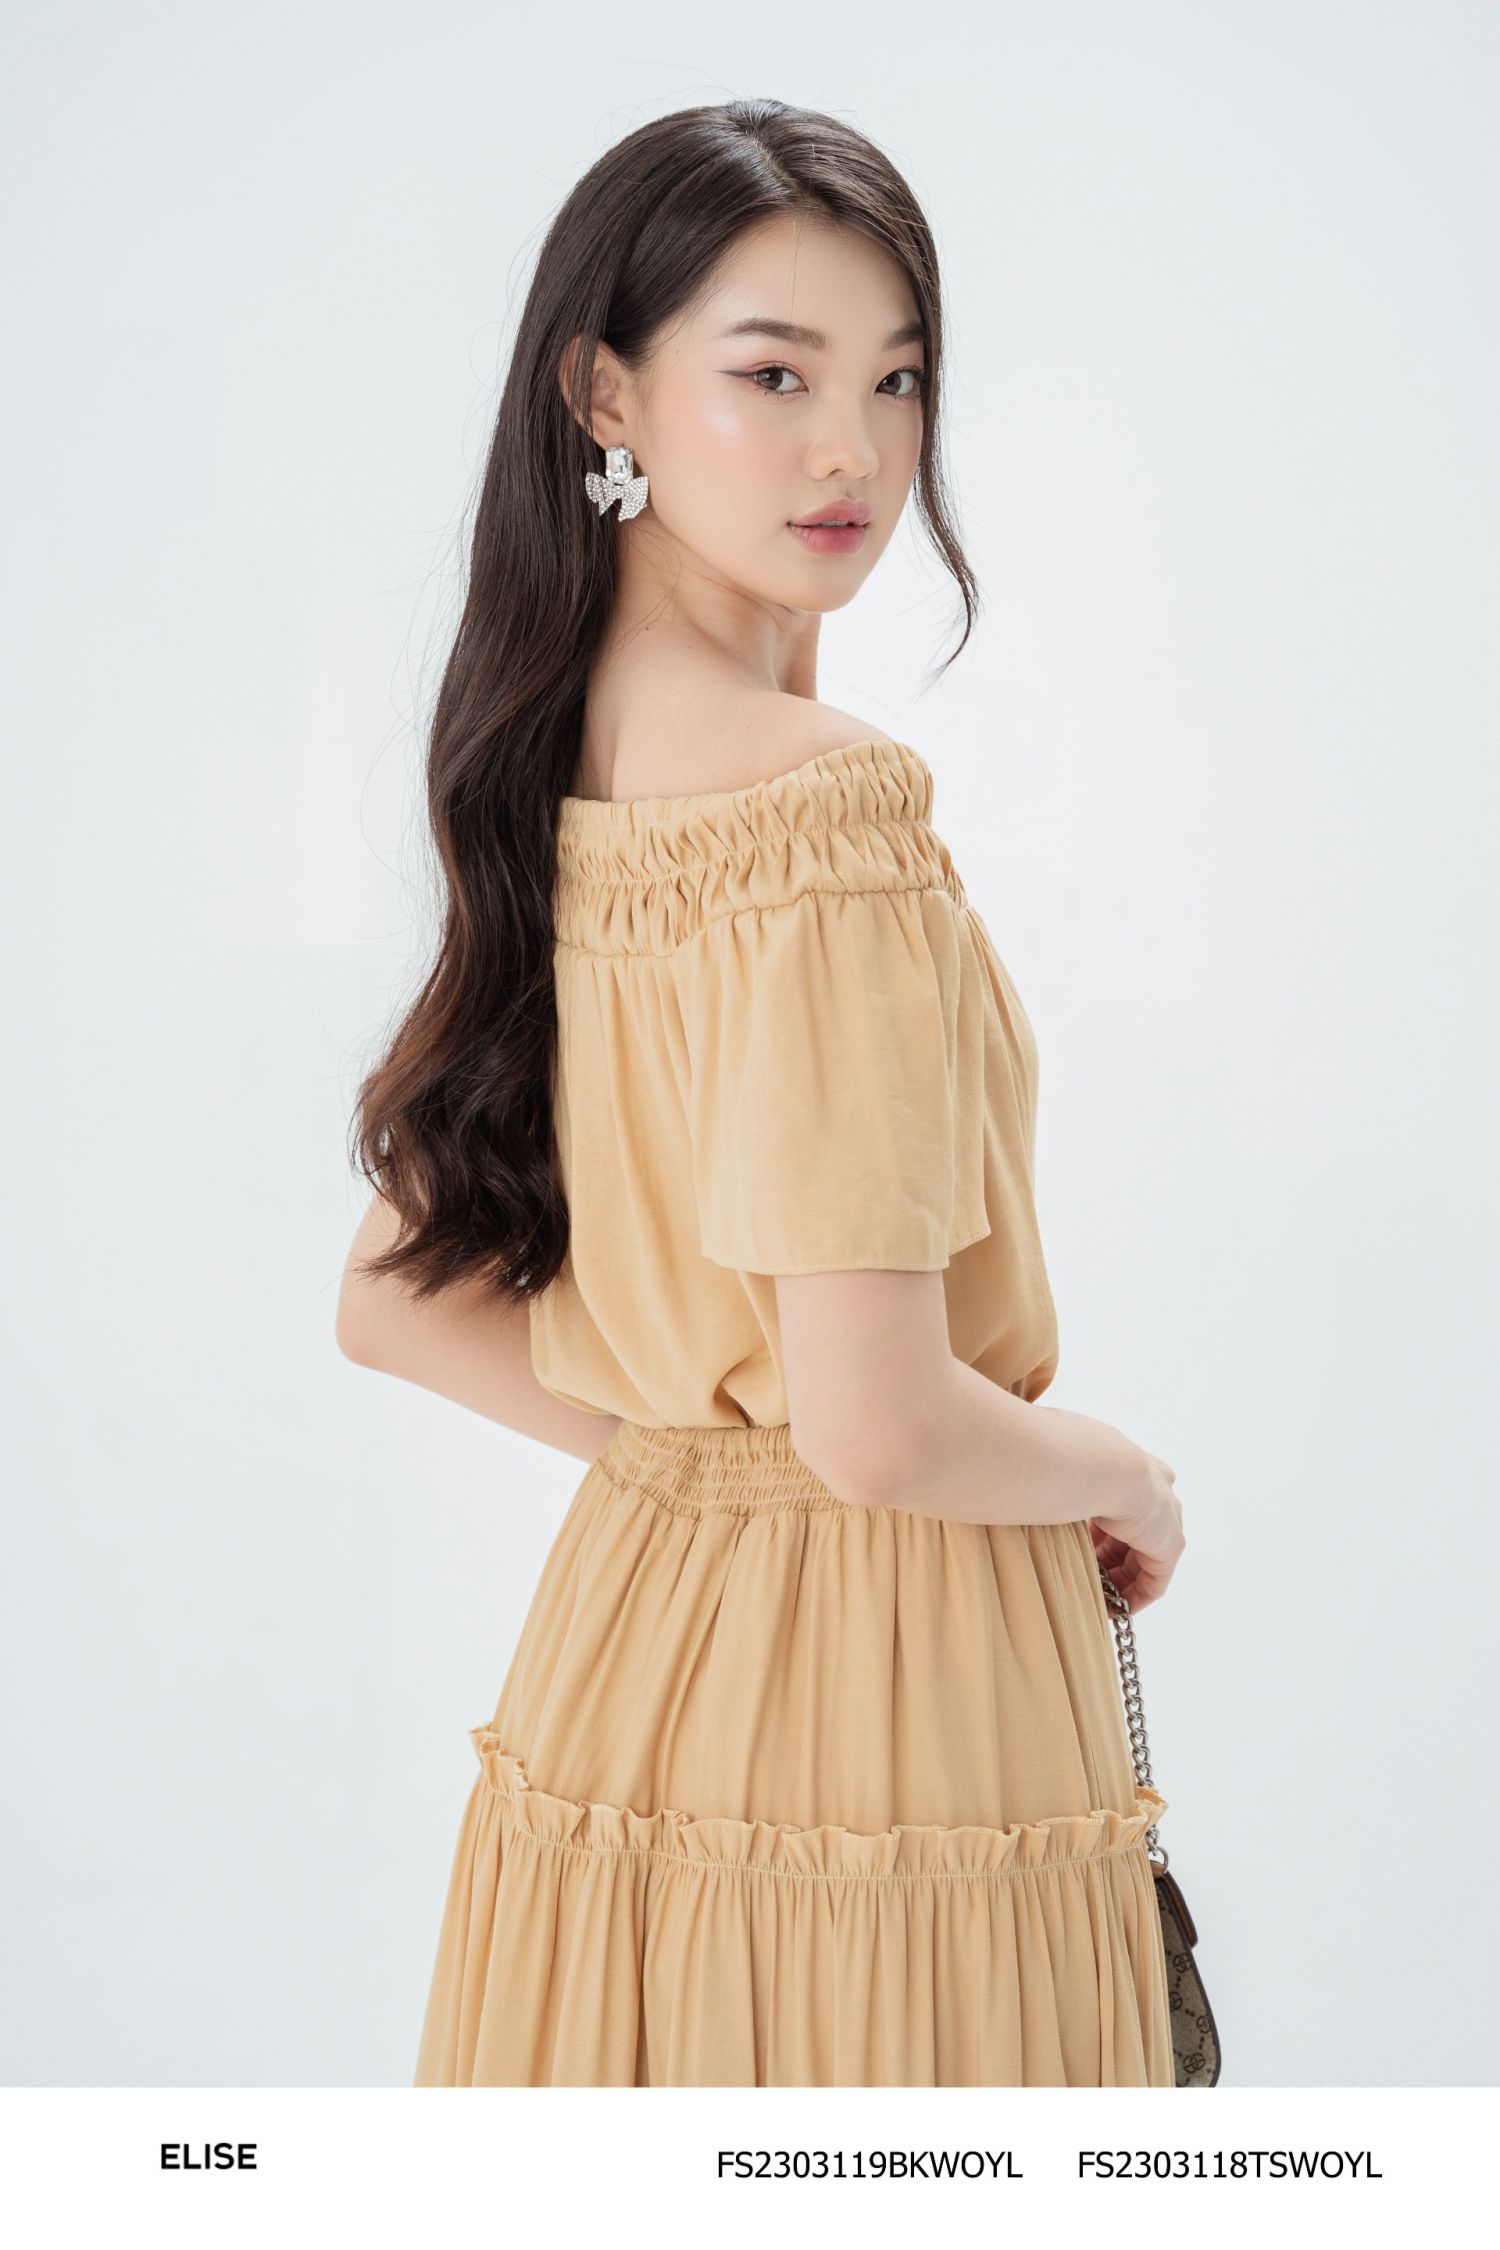 Đầm váy nữ 2 dây da beo xẻ tà bèo Mới 100%, giá: 240.000đ, gọi: 0938202228,  Huyện Bình Chánh - Hồ Chí Minh, id-55b51700